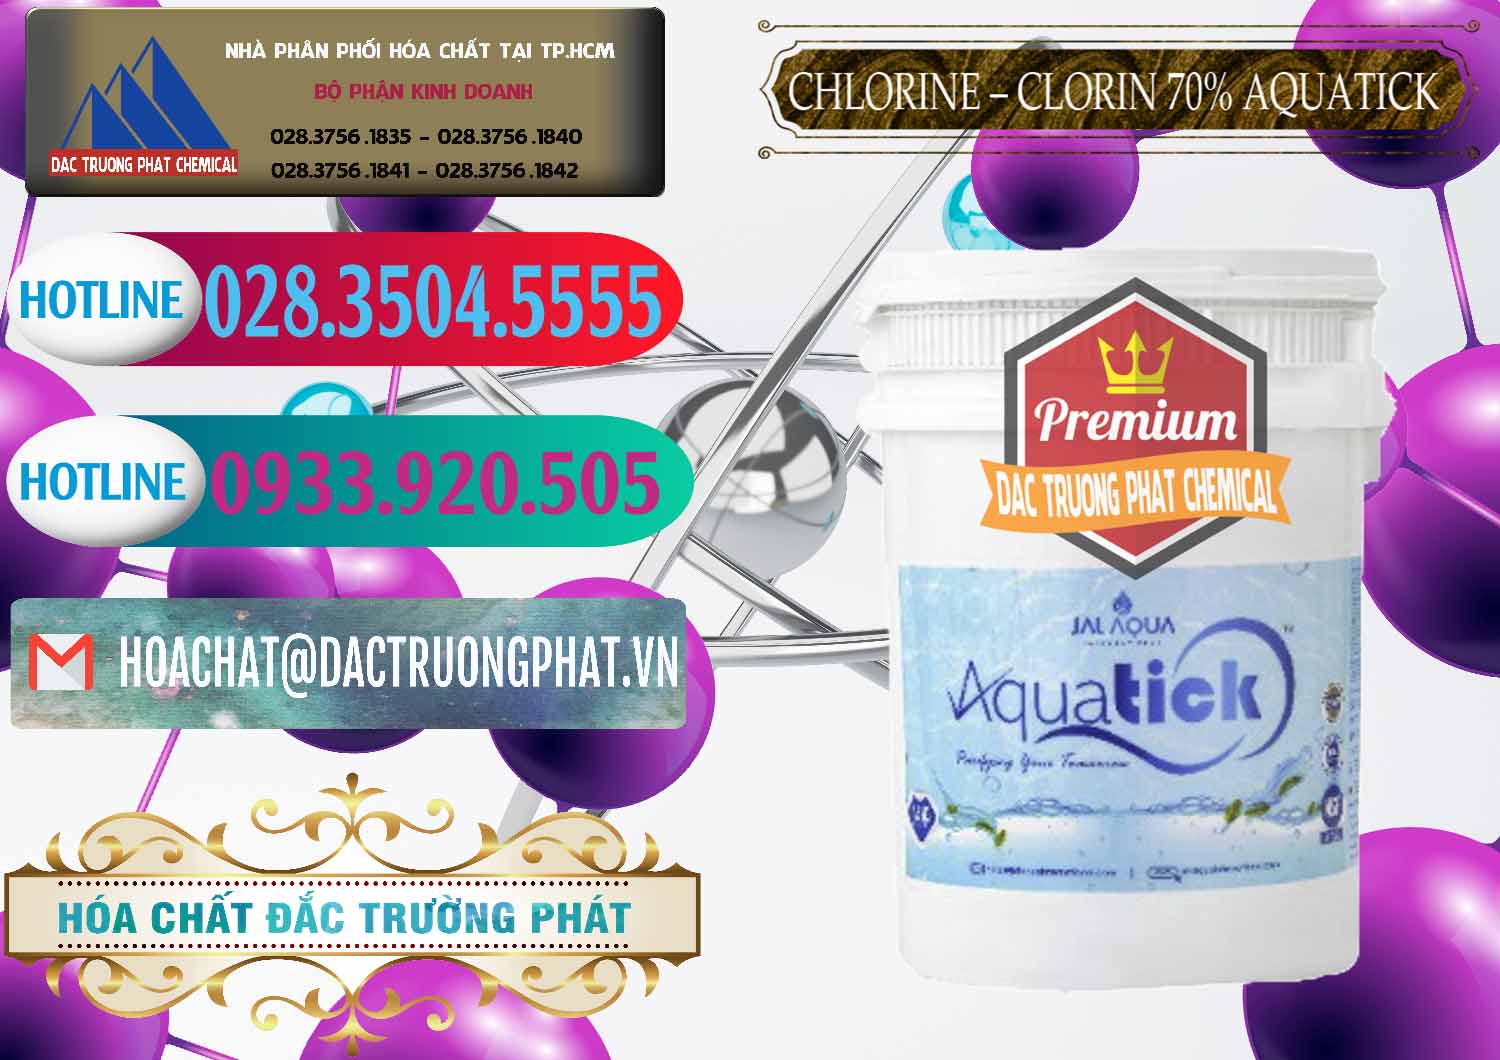 Công ty chuyên bán ( cung ứng ) Chlorine – Clorin 70% Aquatick Thùng Cao Jal Aqua Ấn Độ India - 0237 - Chuyên kinh doanh _ cung cấp hóa chất tại TP.HCM - truongphat.vn